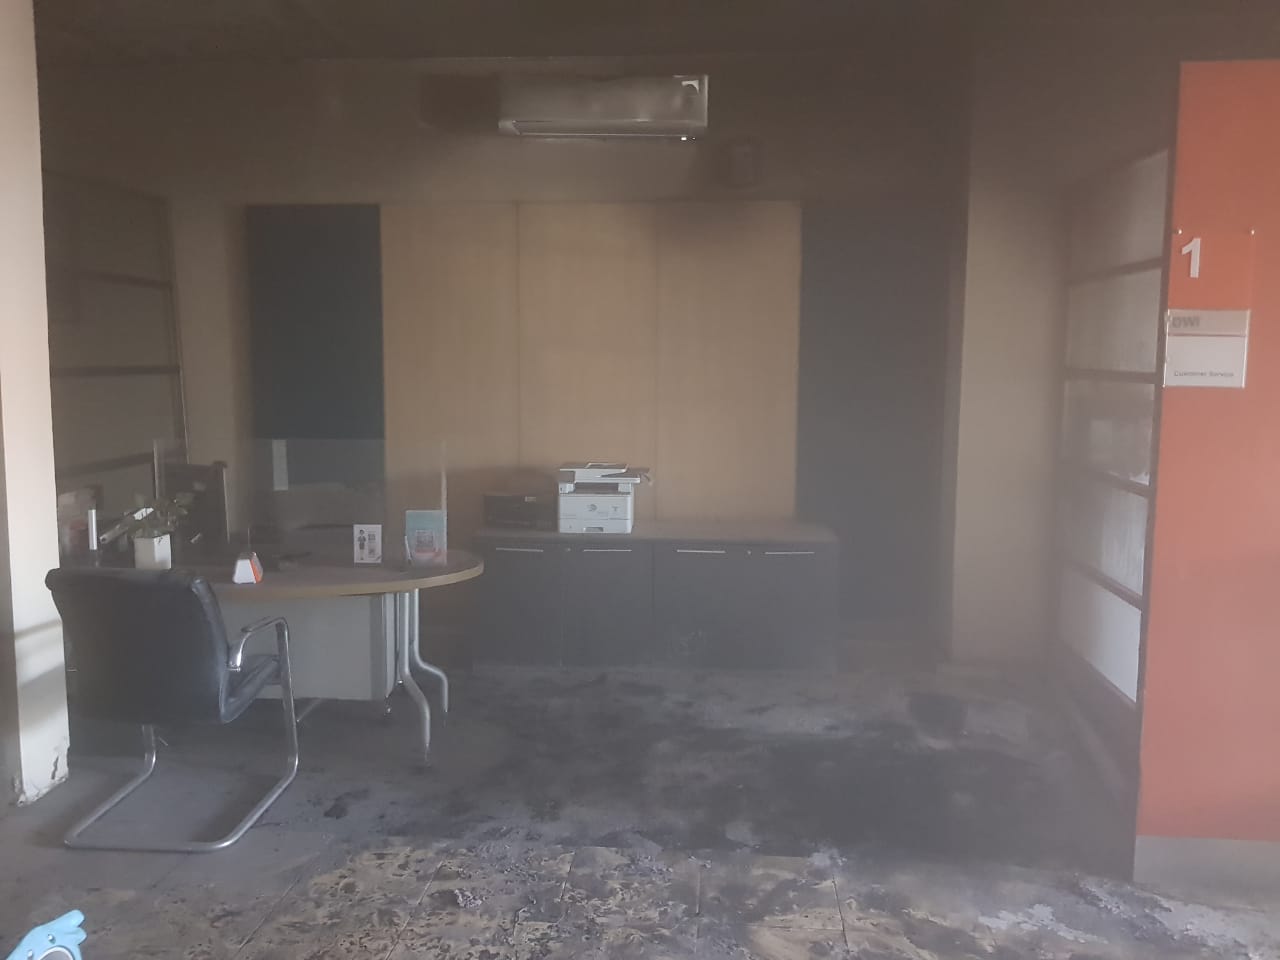 Kantor Cabang BNI Arjawinangun Cirebon Kebakaran, Api Muncul dari Ruang CS